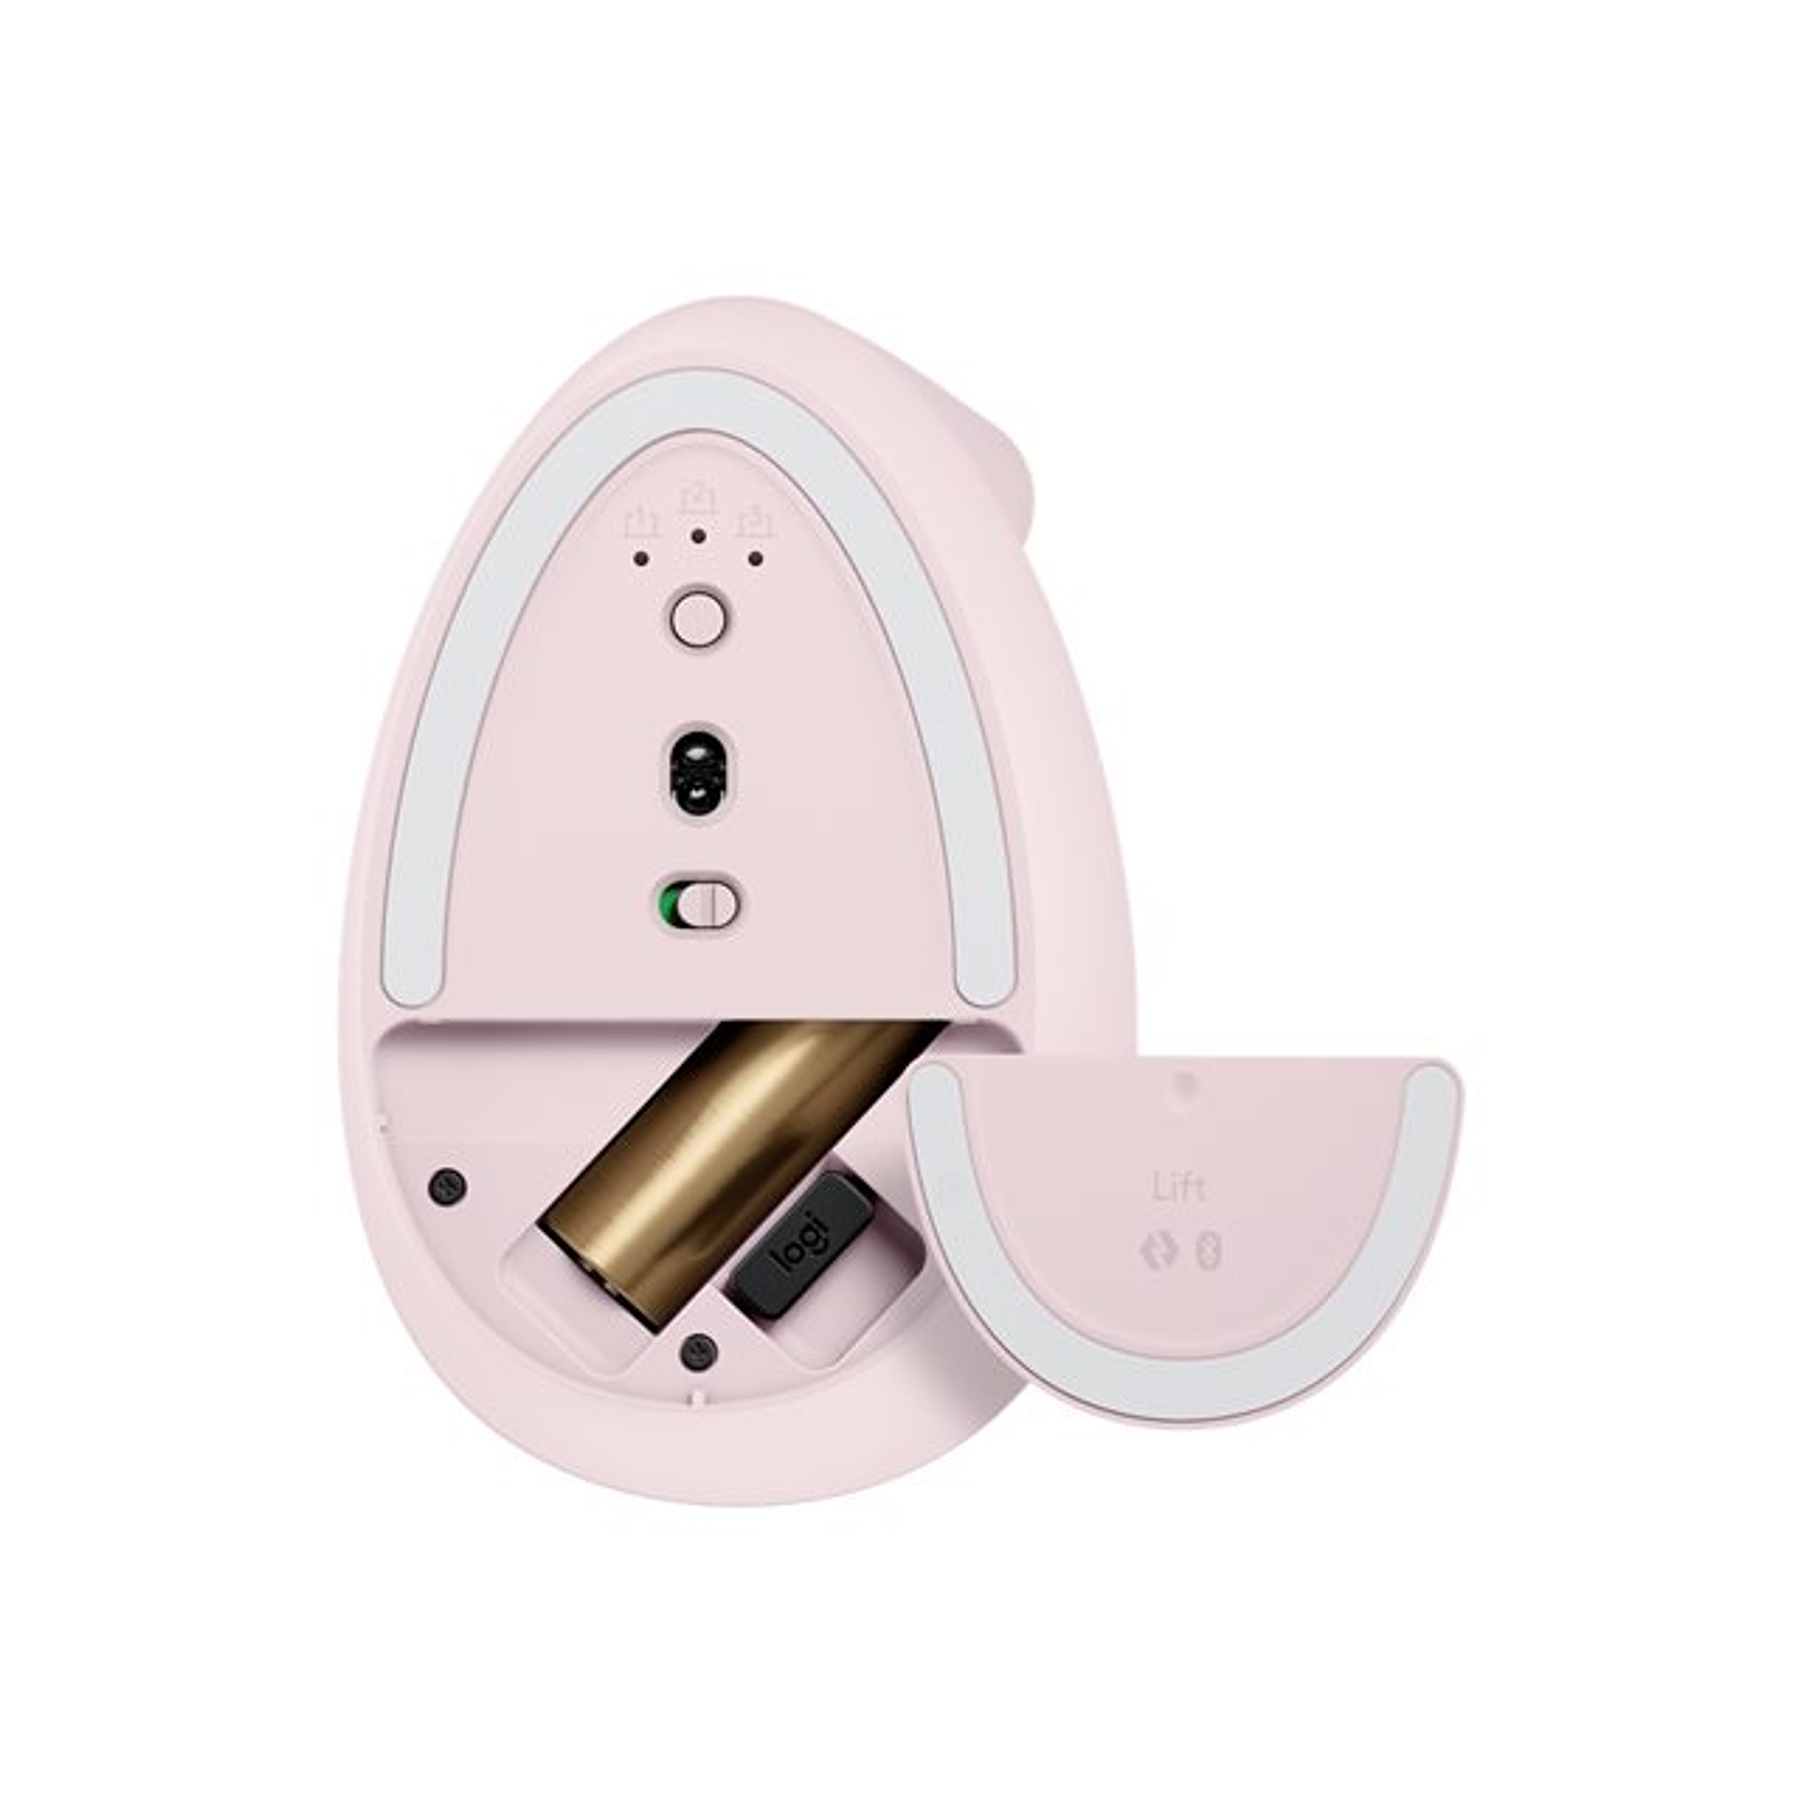 Logitech Lift Vertical Ergonomic Mouse Ergonómico Inalámbricos Color Rosa